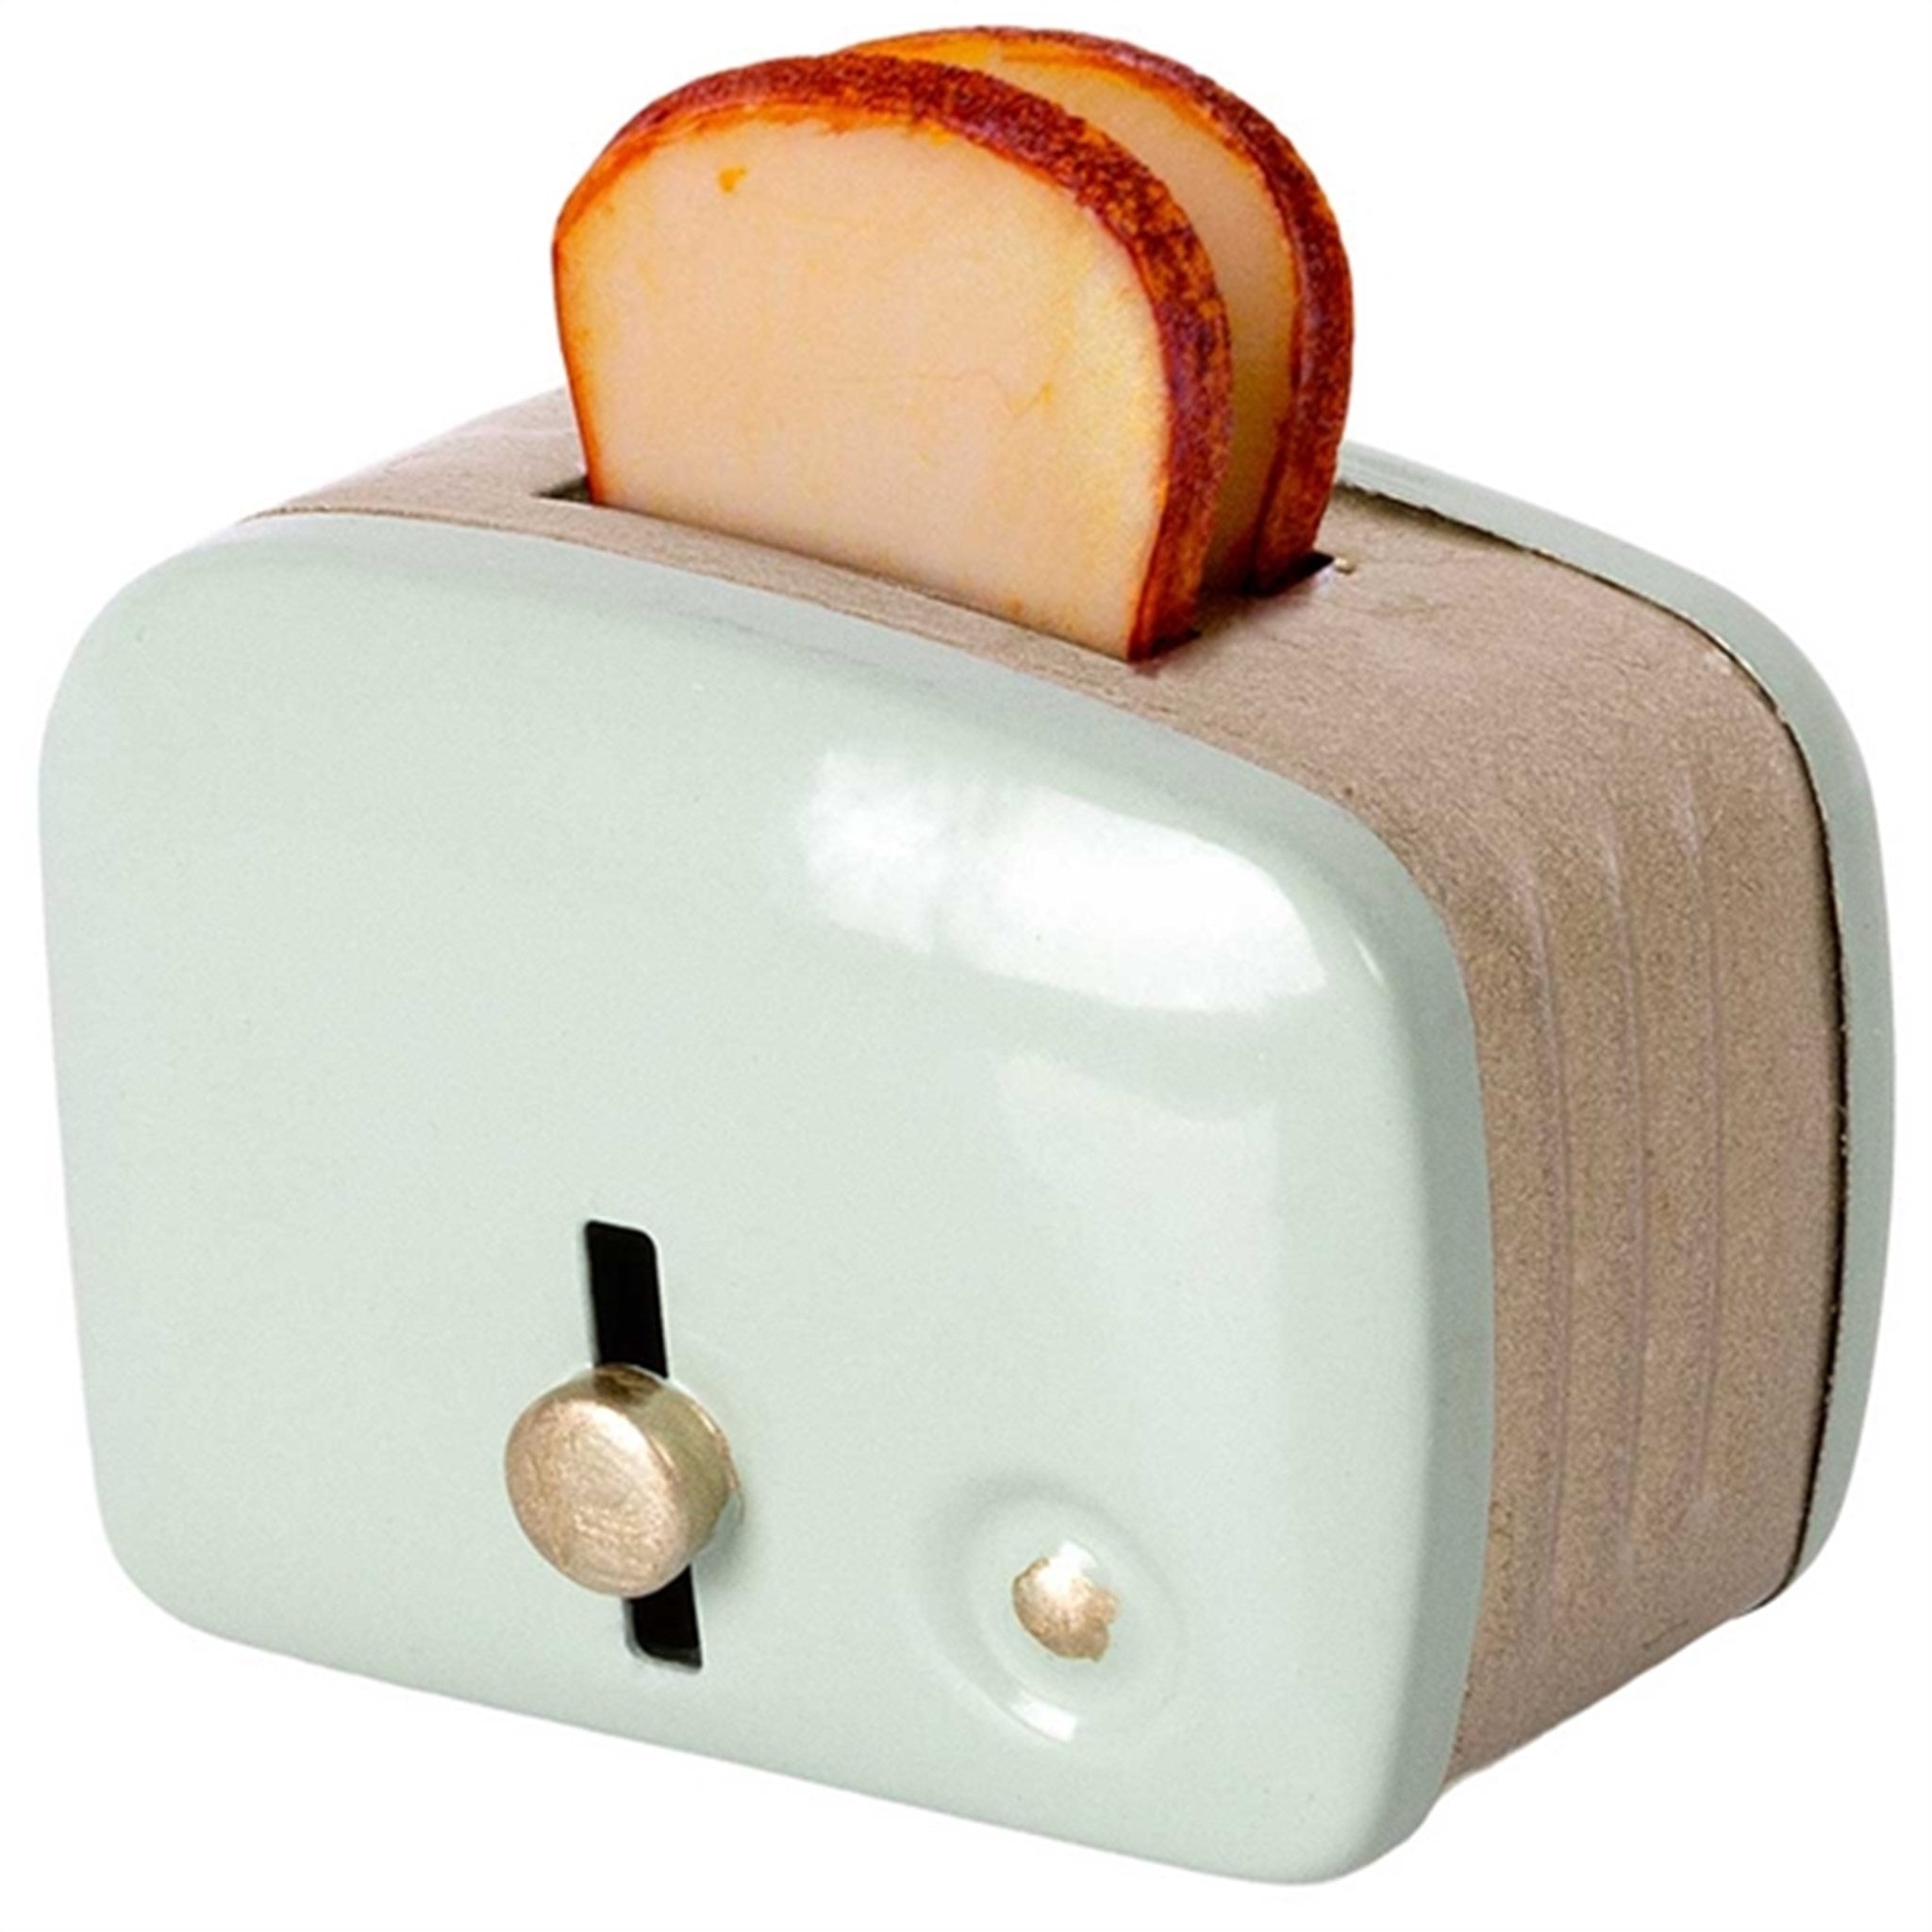 Maileg Miniature Toaster Mint